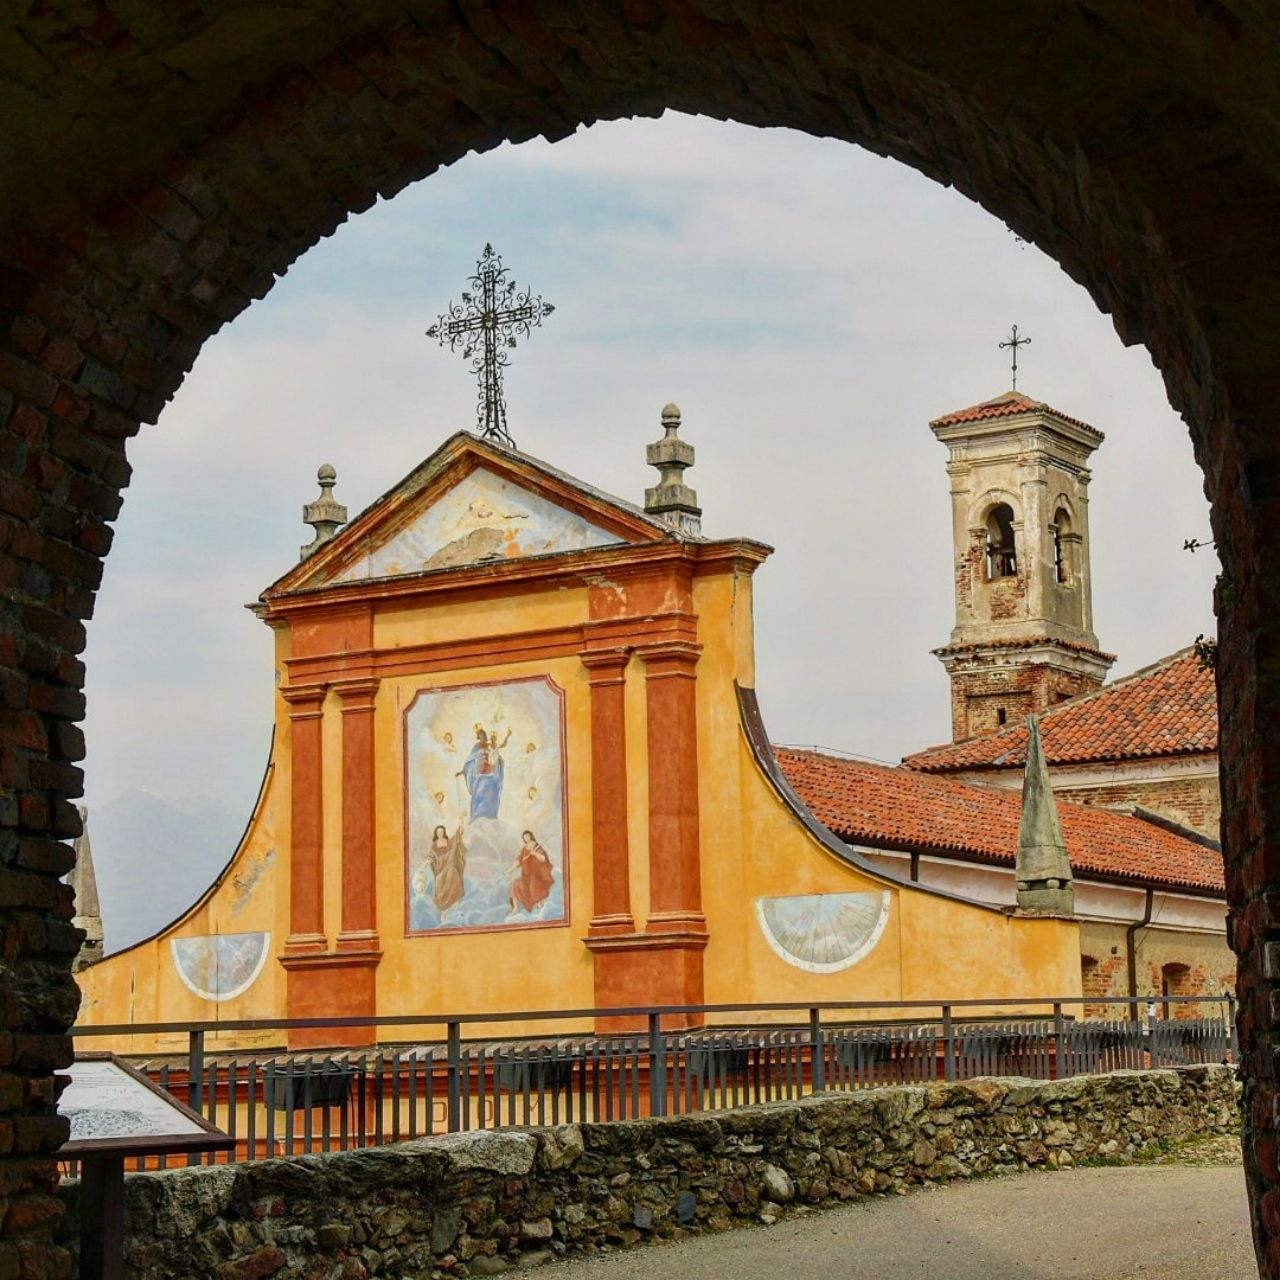 Chiesa Santi Battista e Secondo - Italy